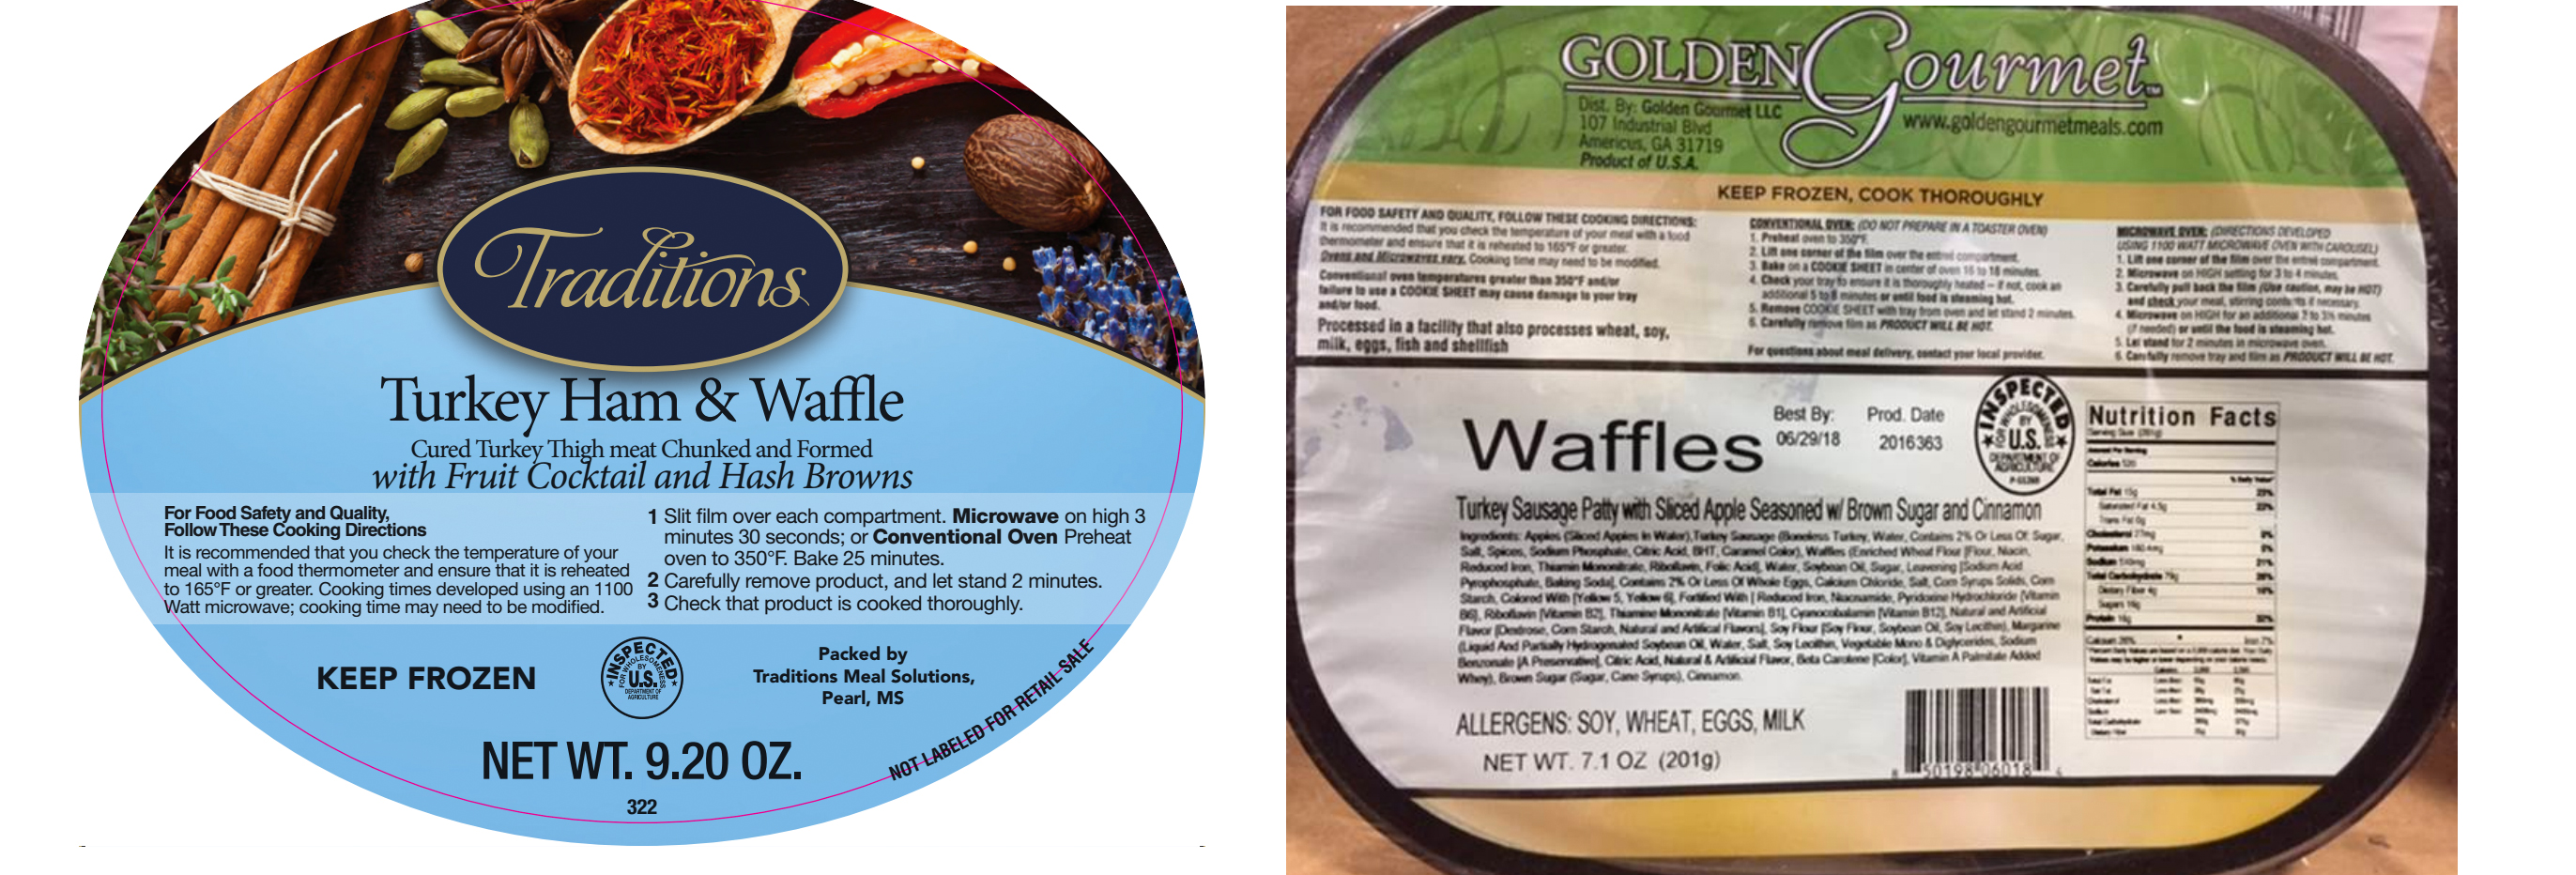 Check Grandma’s Freezer For Potentially Listeria-Contaminated Waffles